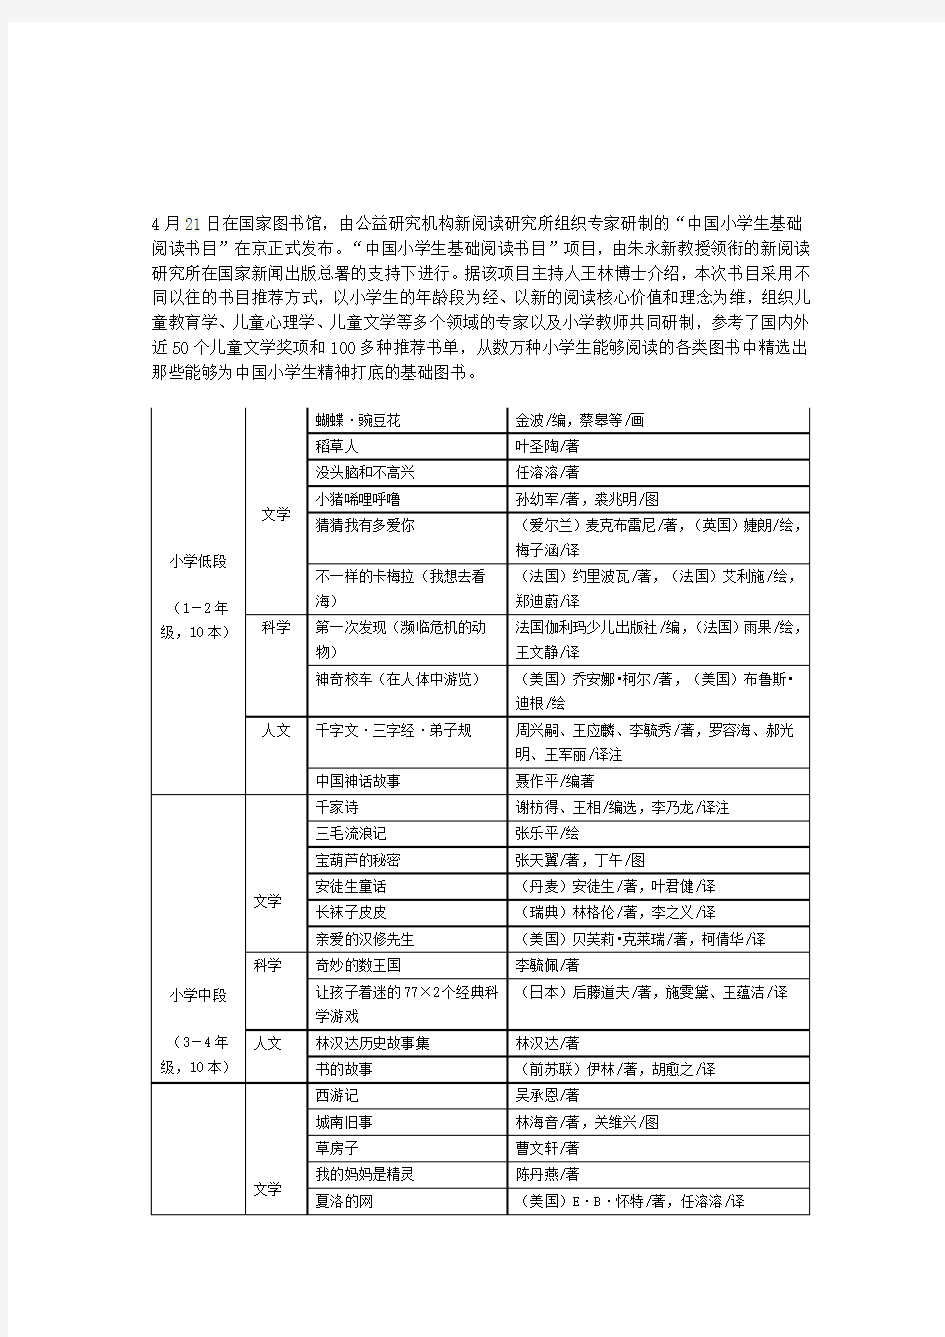 中国小学生基础阅读书目表(新阅读研究所项目组研制,2011年版)